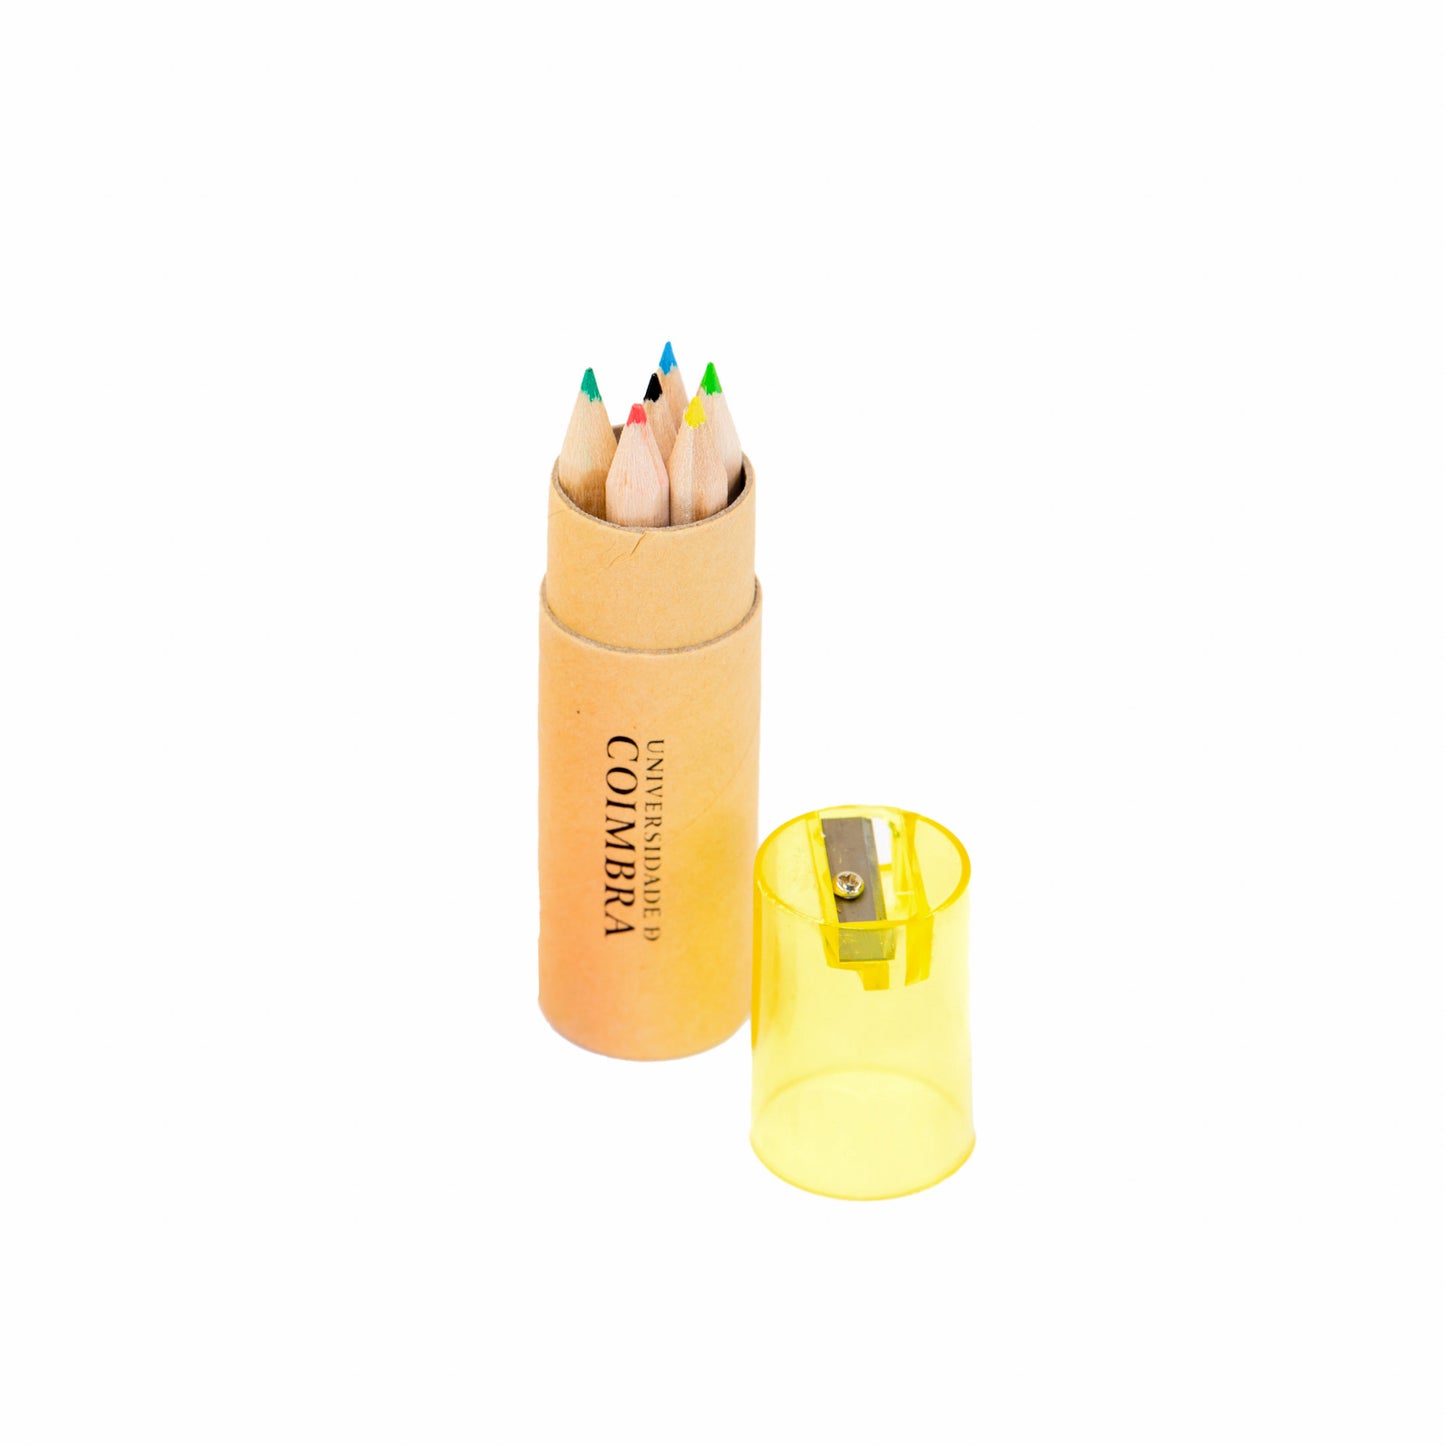 Caixa redonda amarela com lápis de cor e afiadeira.